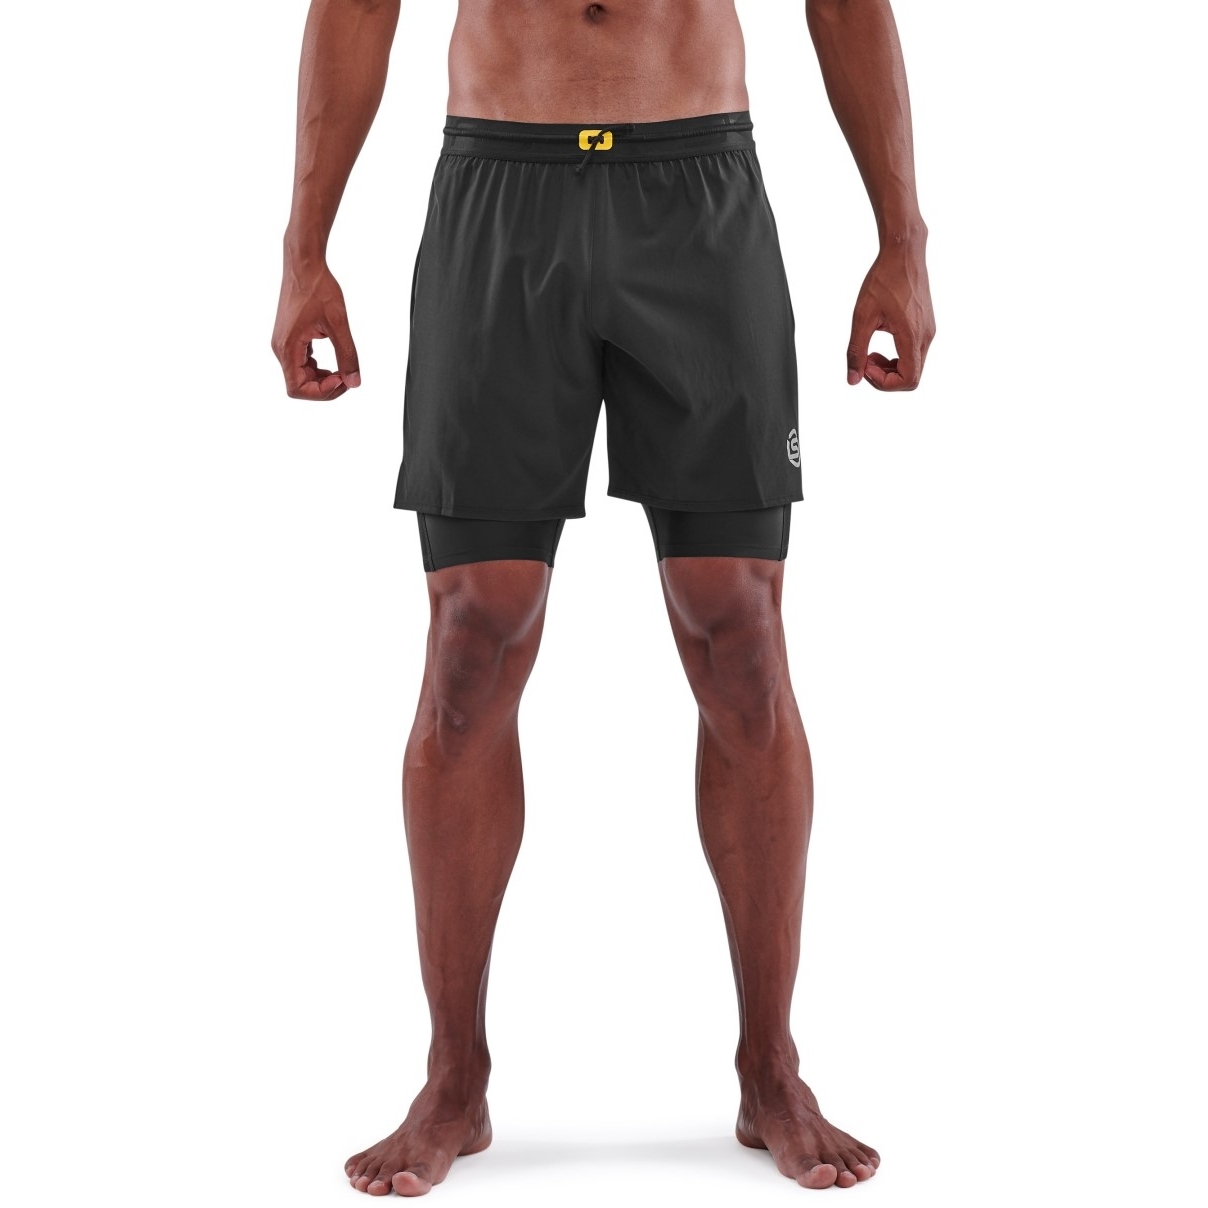 Produktbild von SKINS 3-Series Superpose Fitness-Hose 2-in-1 - Schwarz